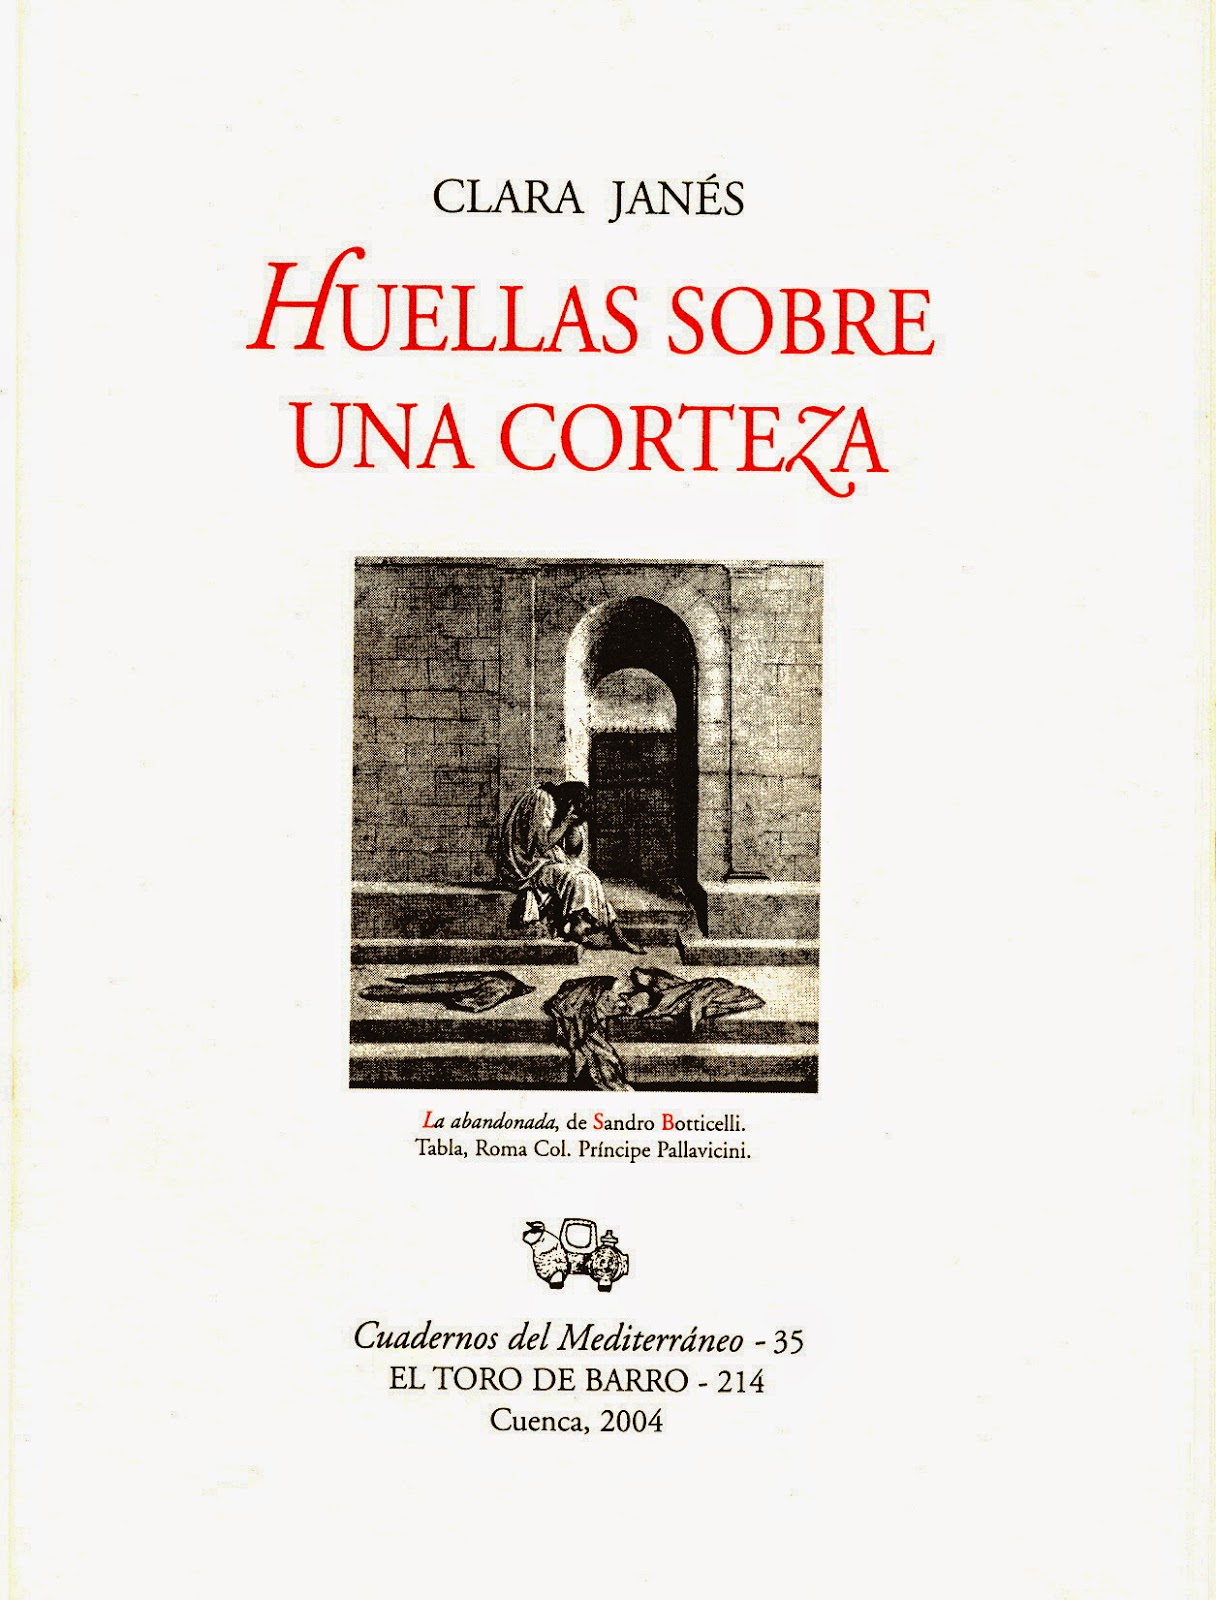  Clara Janés, "Huellas sobre una corteza". Col Cuadernos del Mediterráneo. Ed. El Toro de Barro, Tarancón de Cuenca 2004.